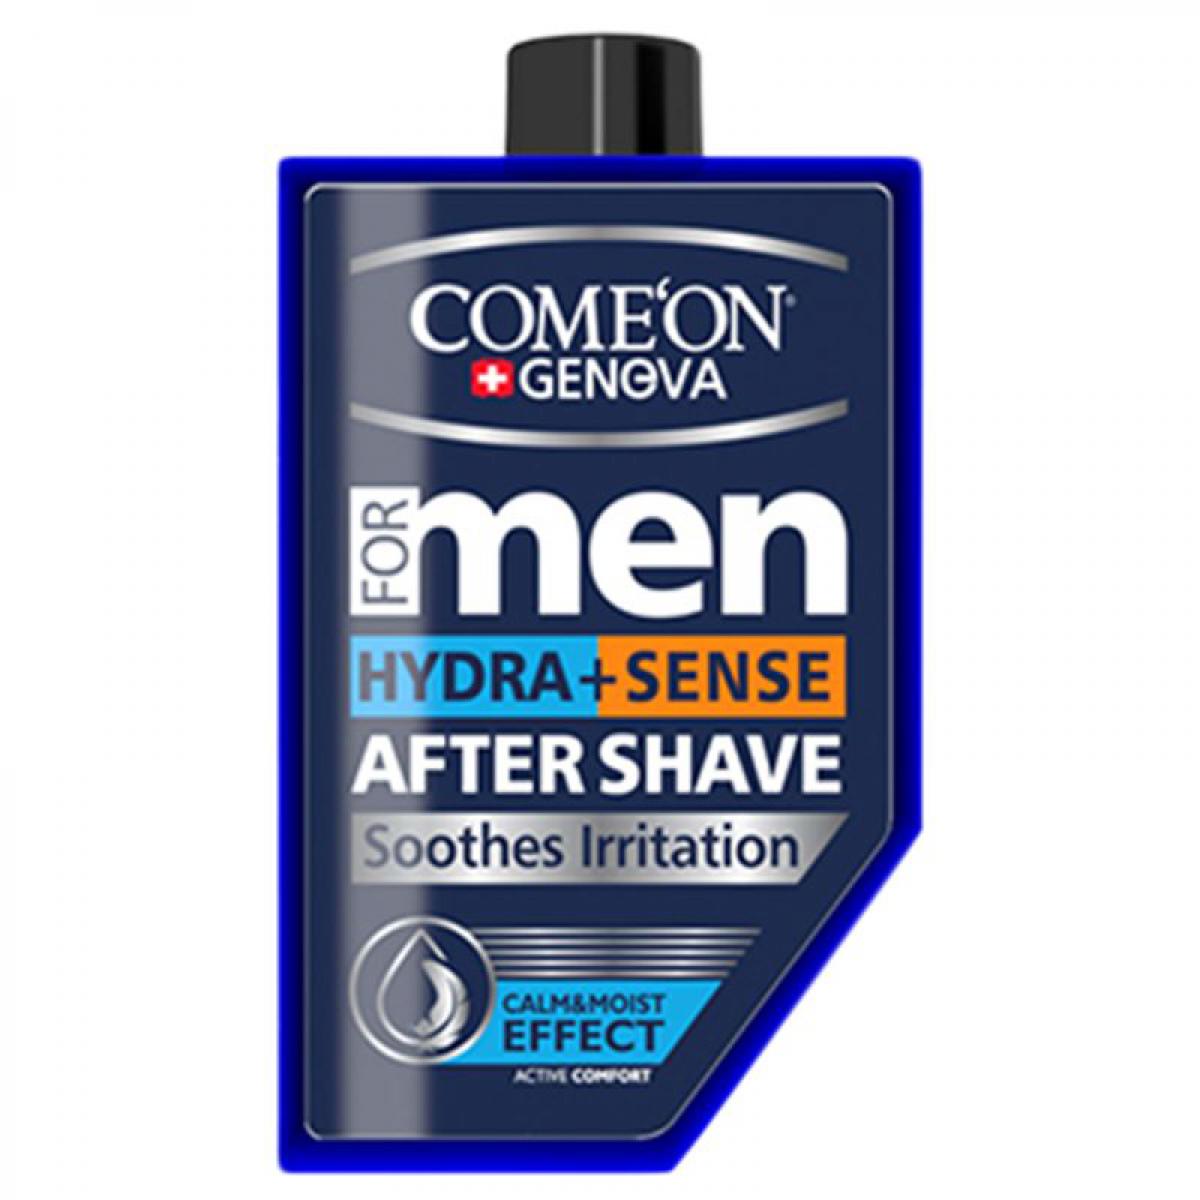 ژل افتر شیو آبرسان با خاصیت رطوبت رسانی و ضد حساسیت - Comeon Men 2 in 1 Hydrate + Sense After Shave 260ml